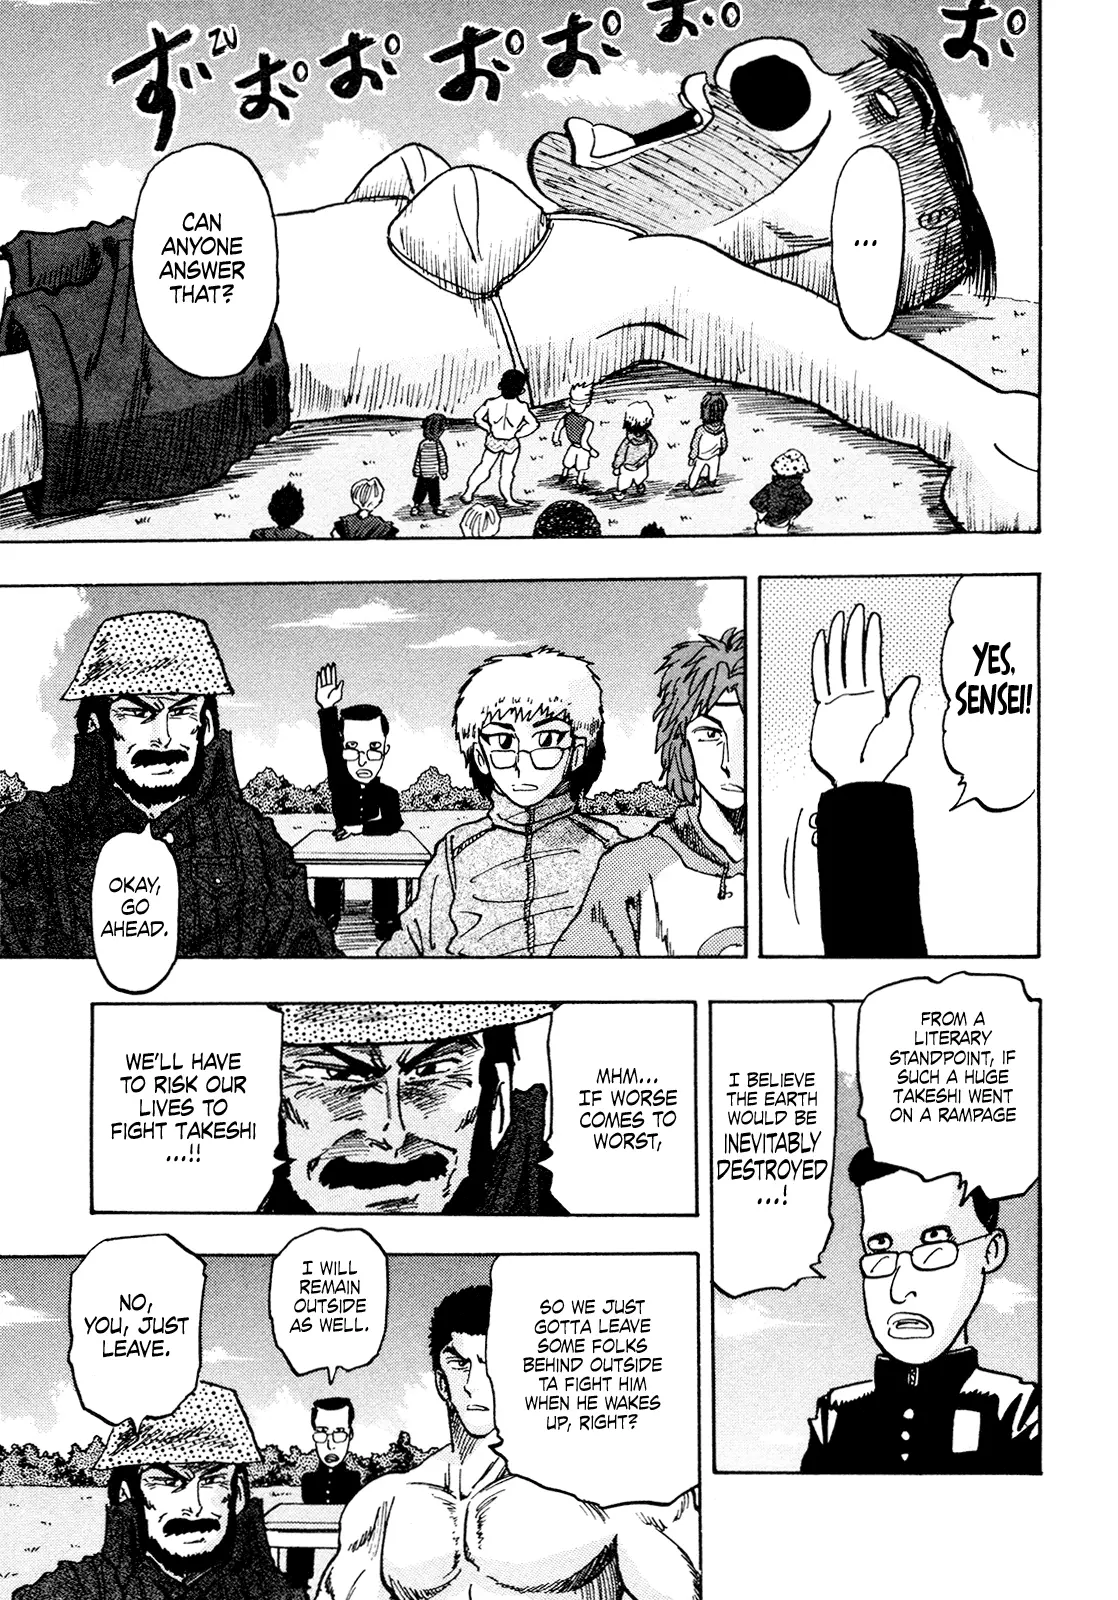 Seikimatsu Leader Den Takeshi! - 174 page 9-842ce765